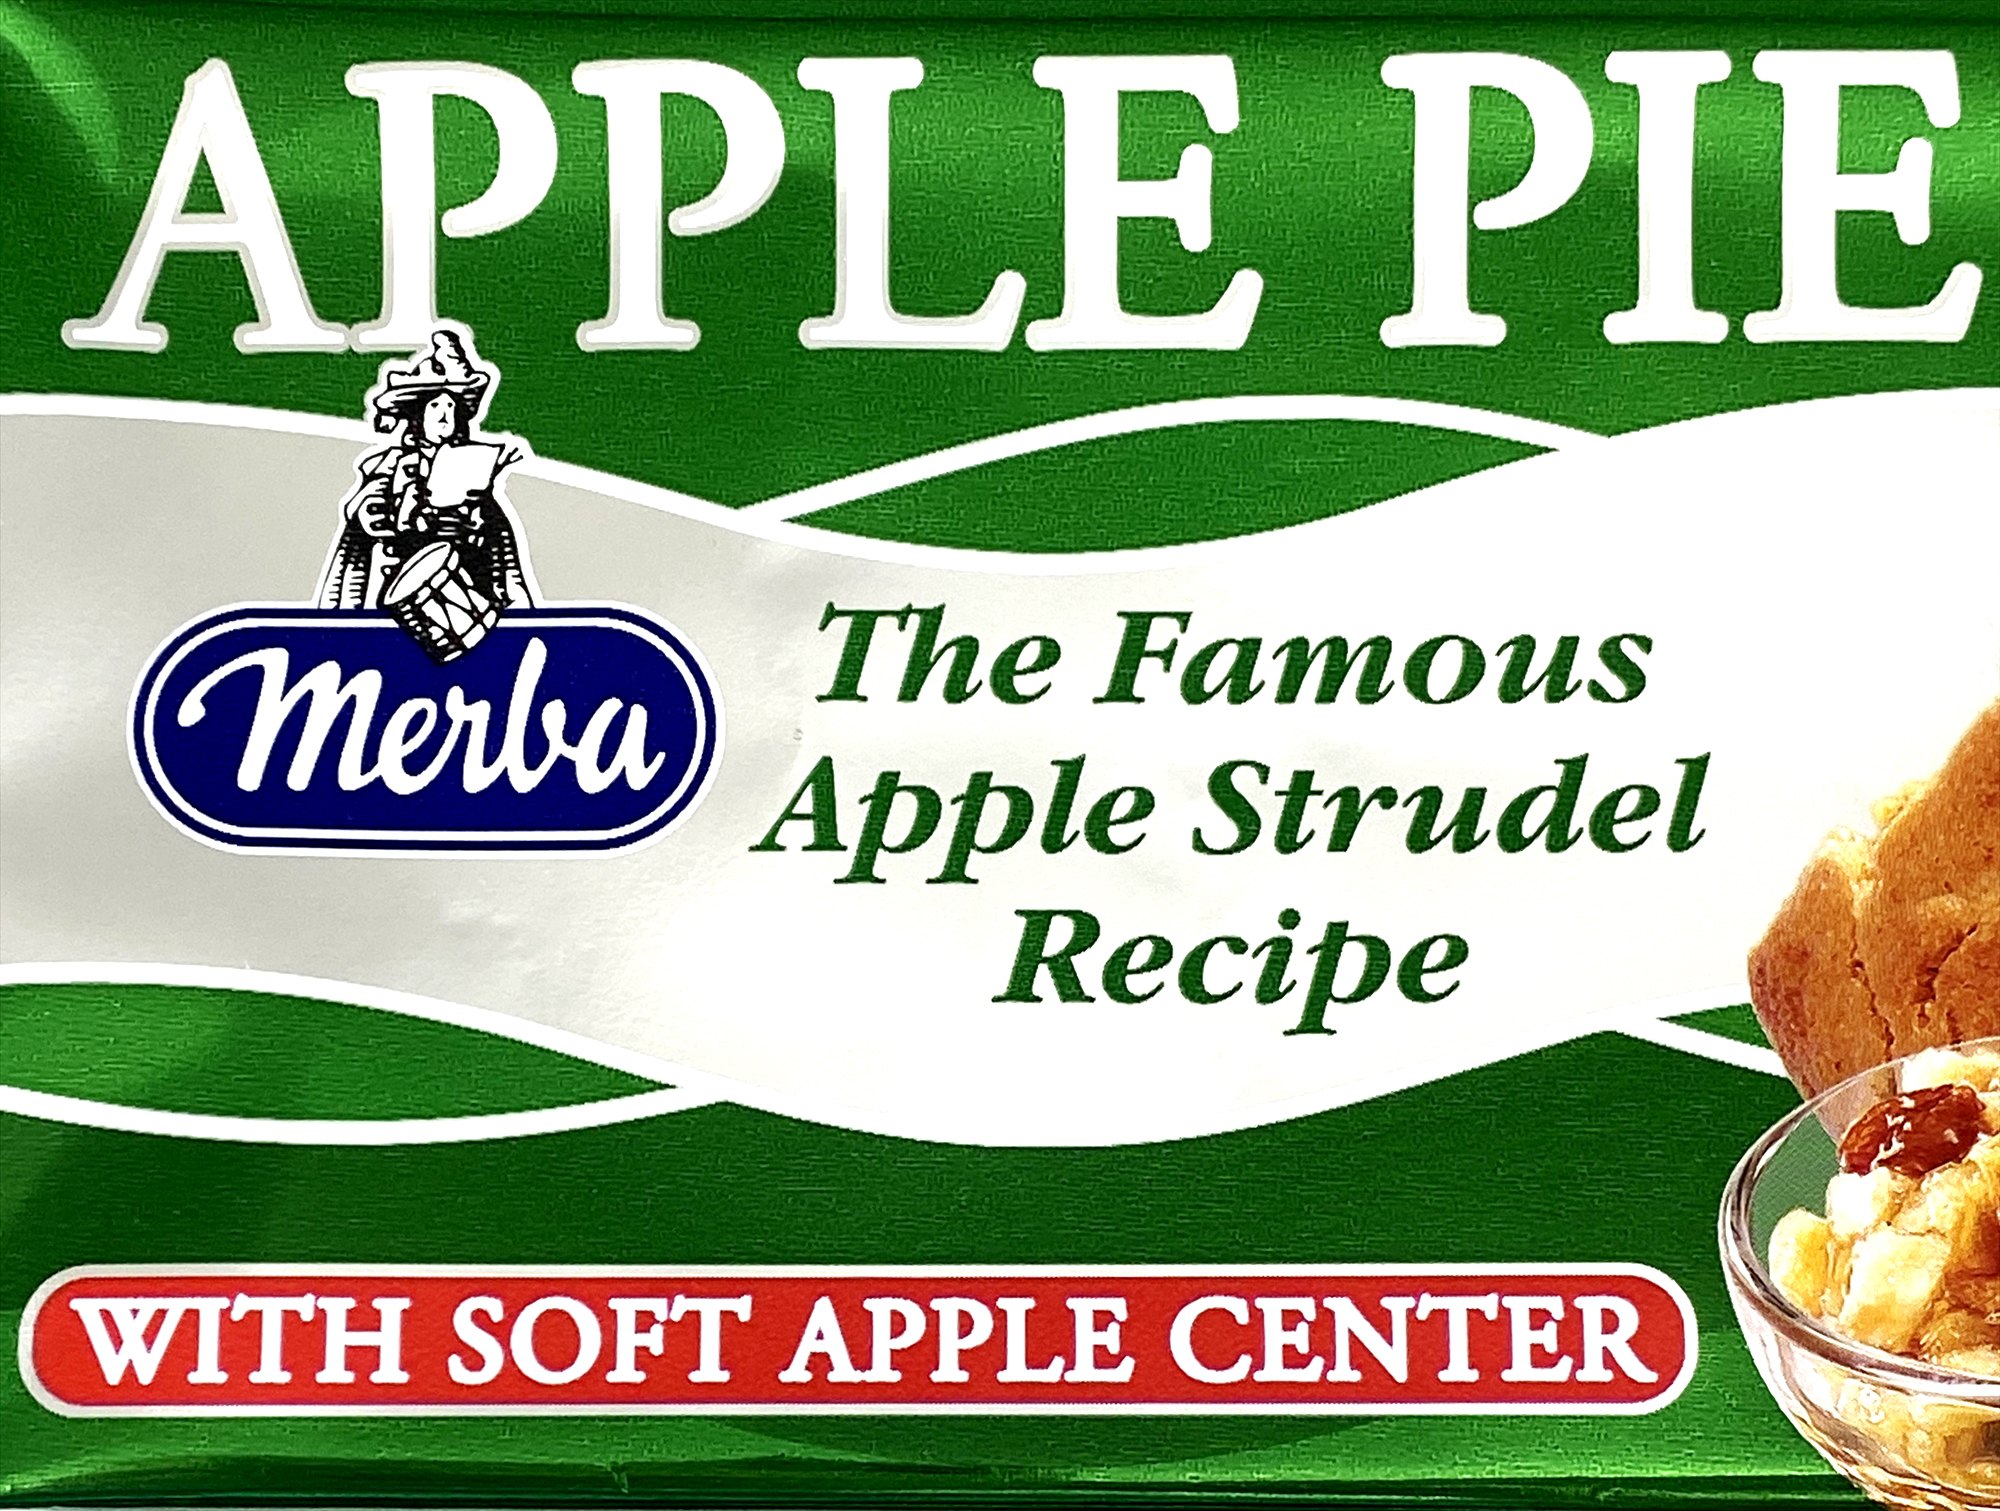 The Famous Apple Strudel Recipe.